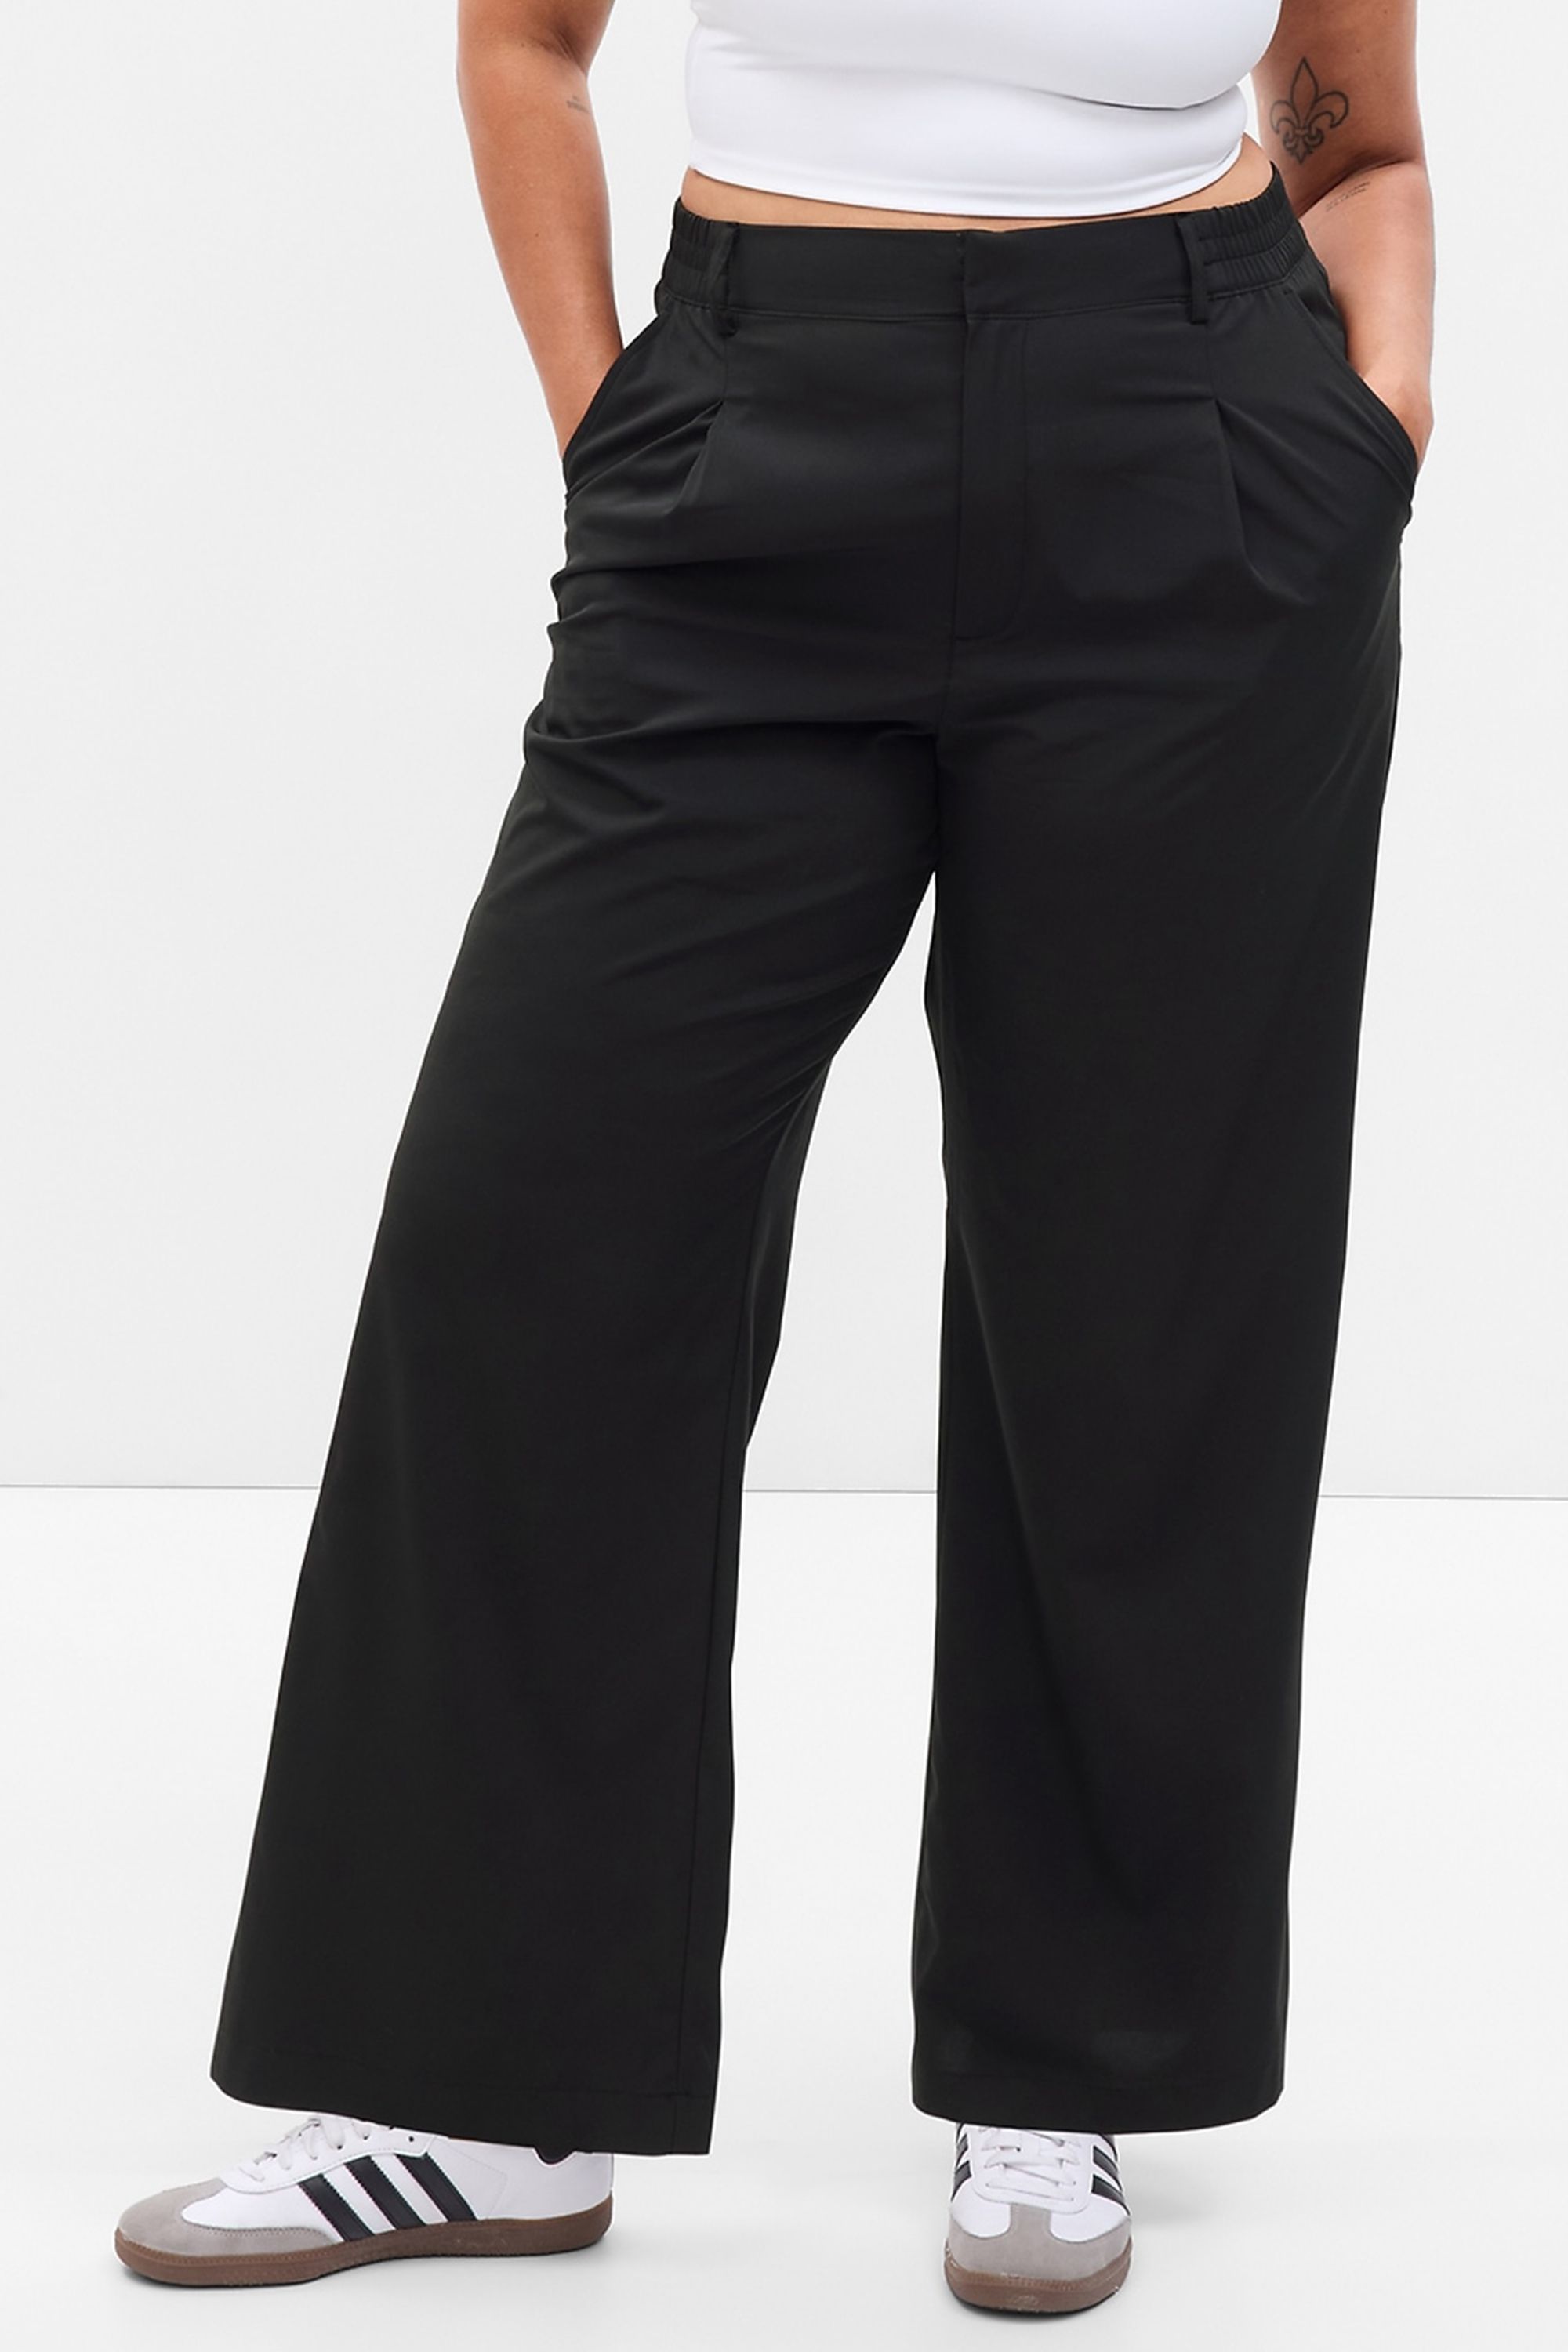 Gap Women's Gray Pants | ShopStyle